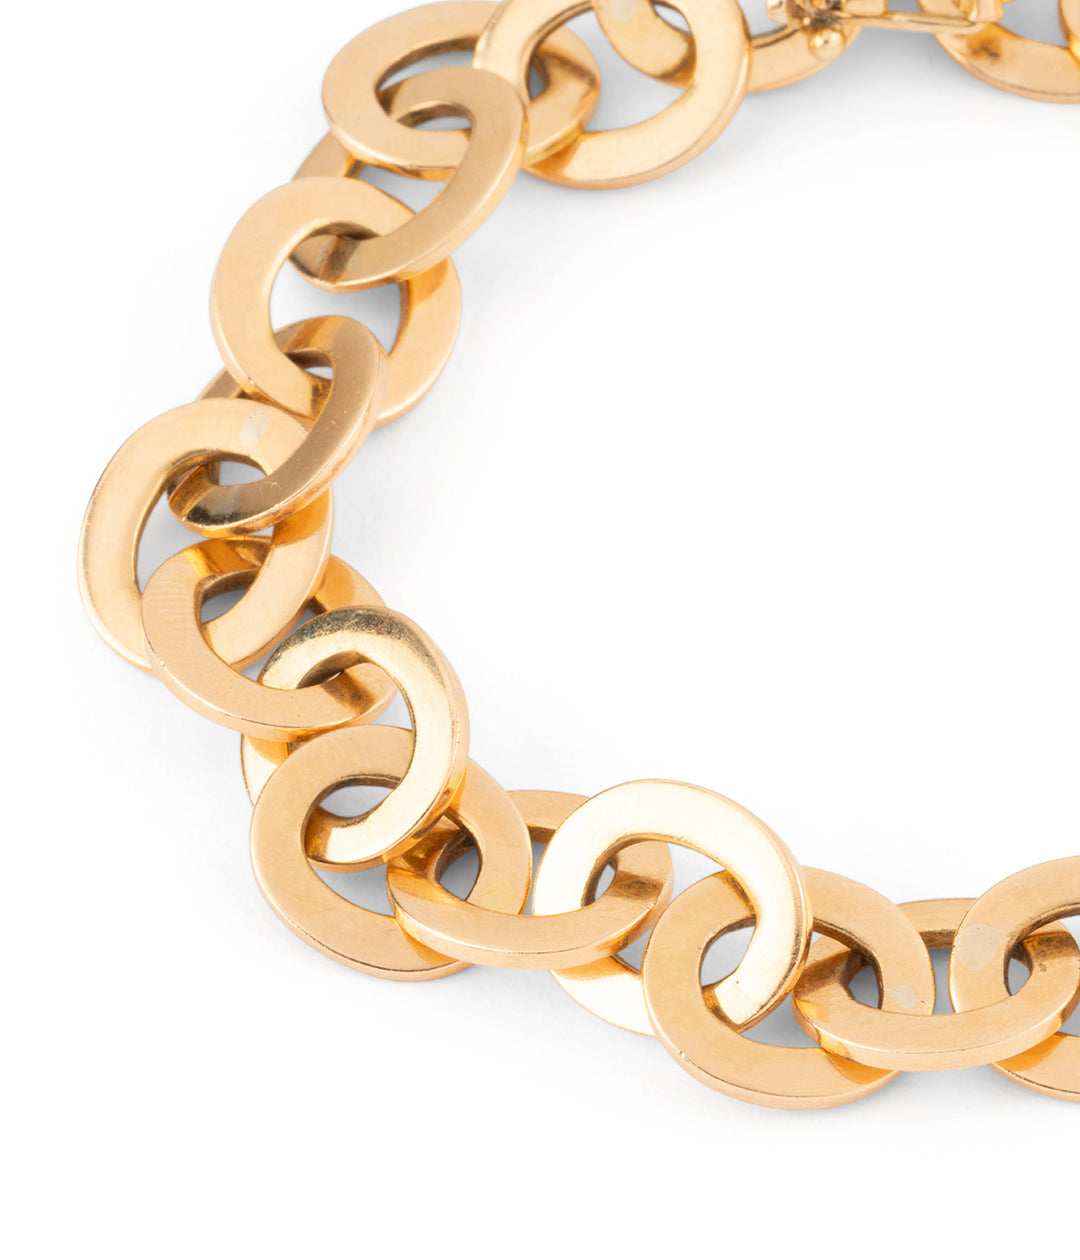 Antique gold oval mesh bracelet "Fianna" - Caillou Paris